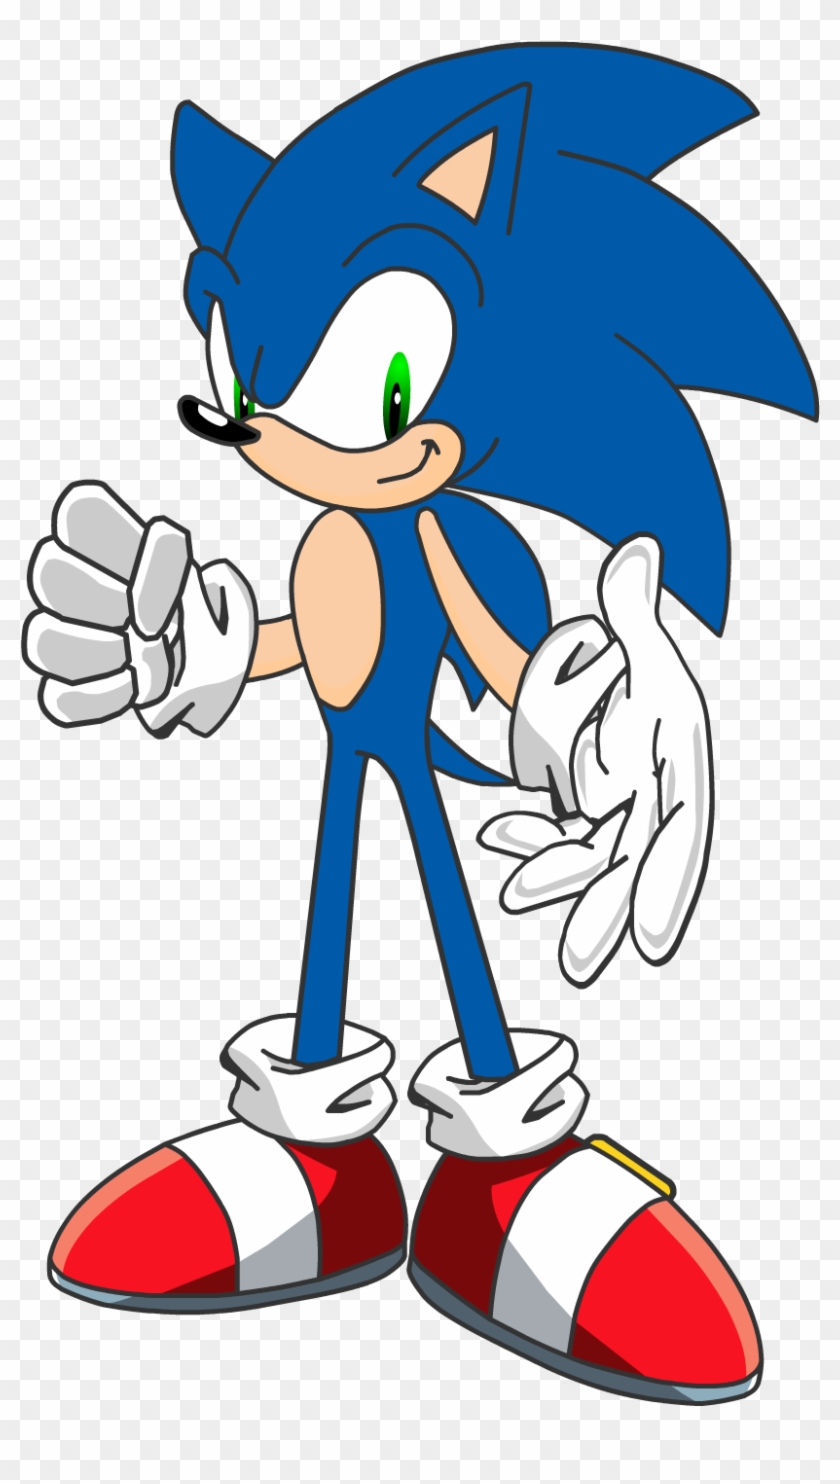 The Hedgehog Art - Sonic The Hedgehog O No Clipart #2901540